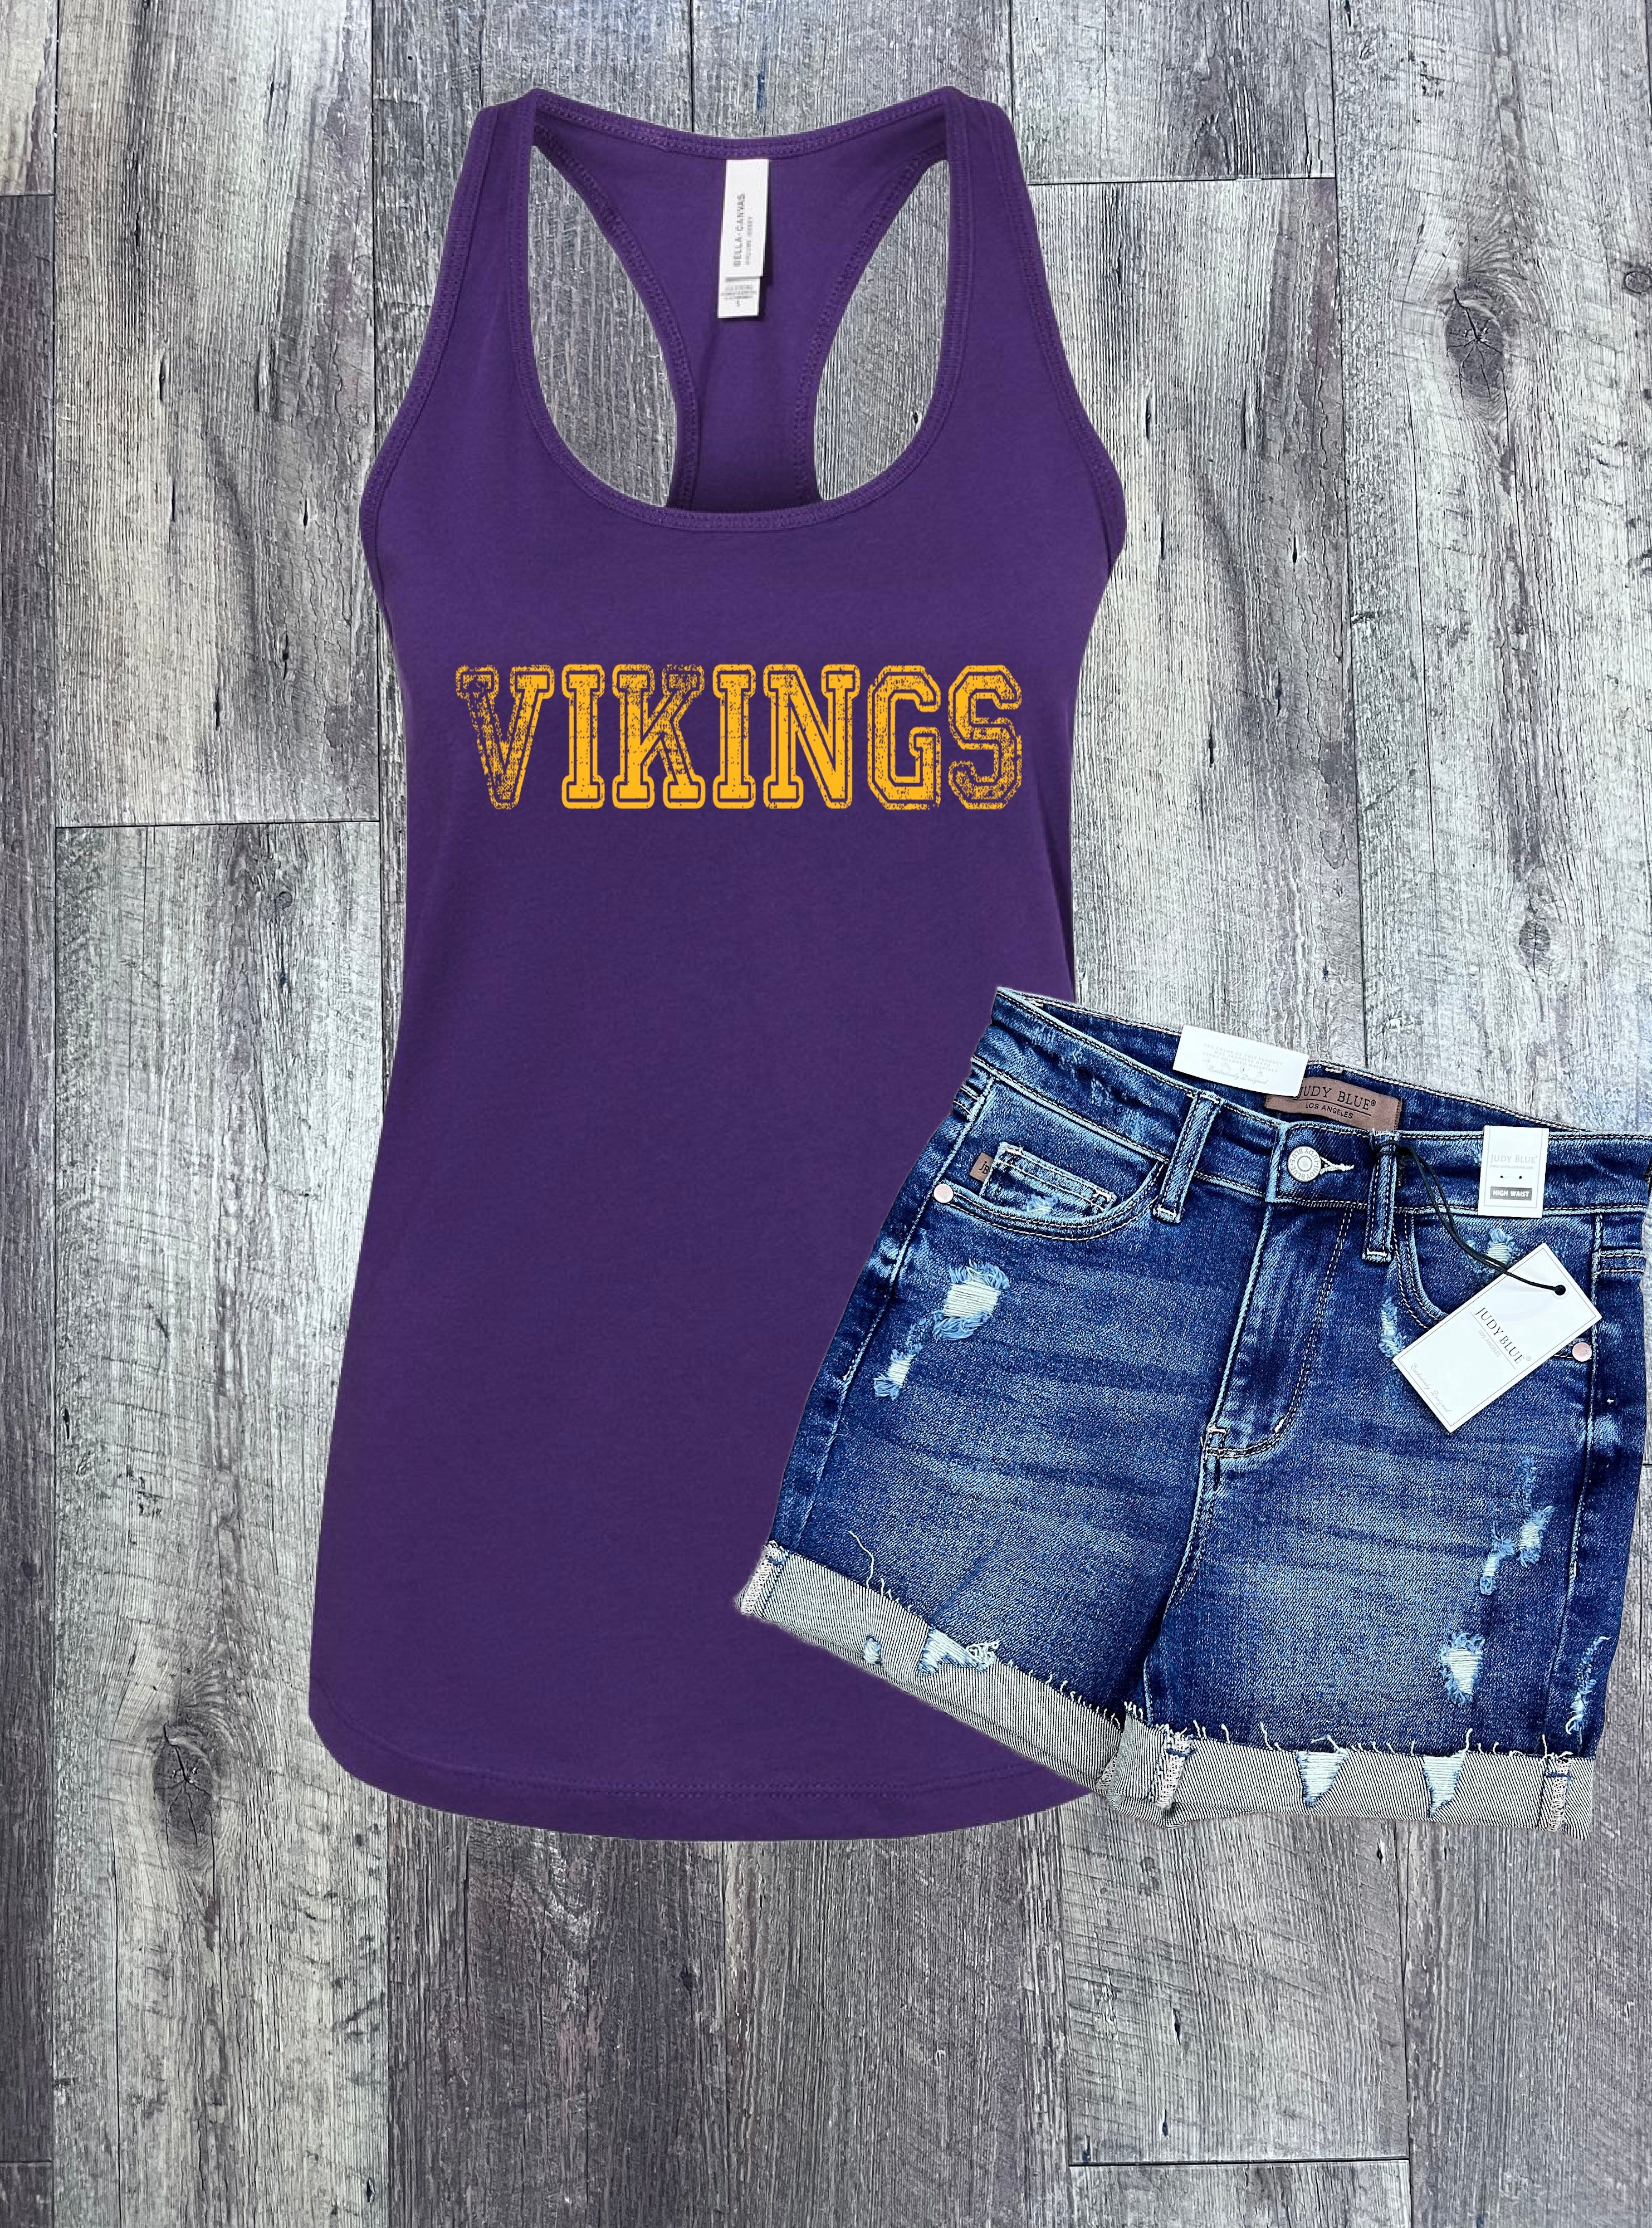 Vintage Vikings Hoodie, Pullover, Tee, or Tank